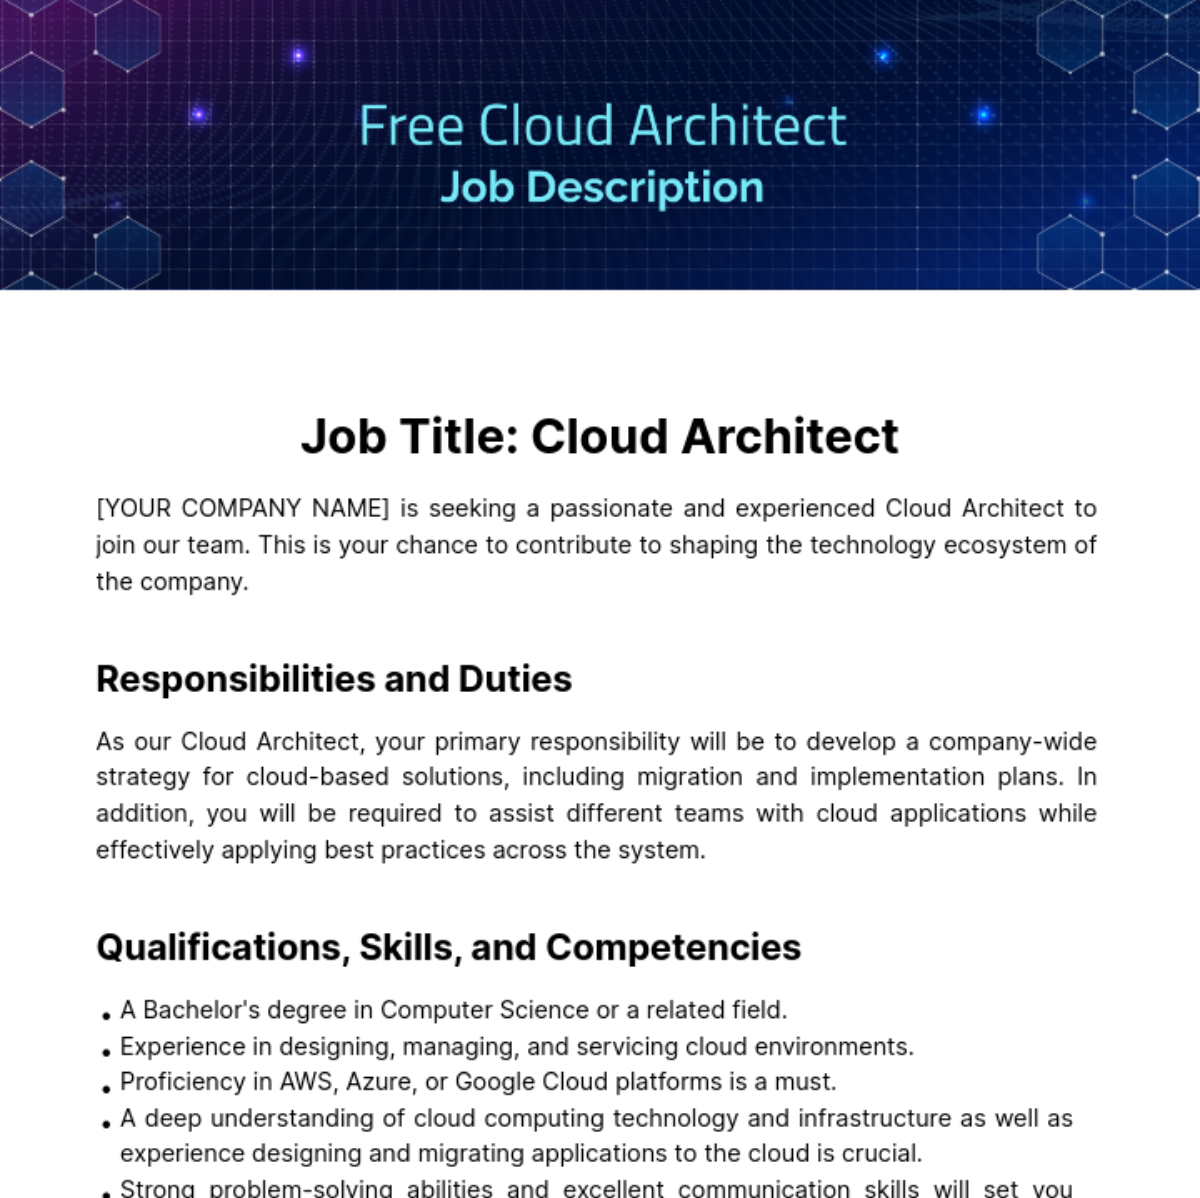 Free Cloud Architect Job Description Template